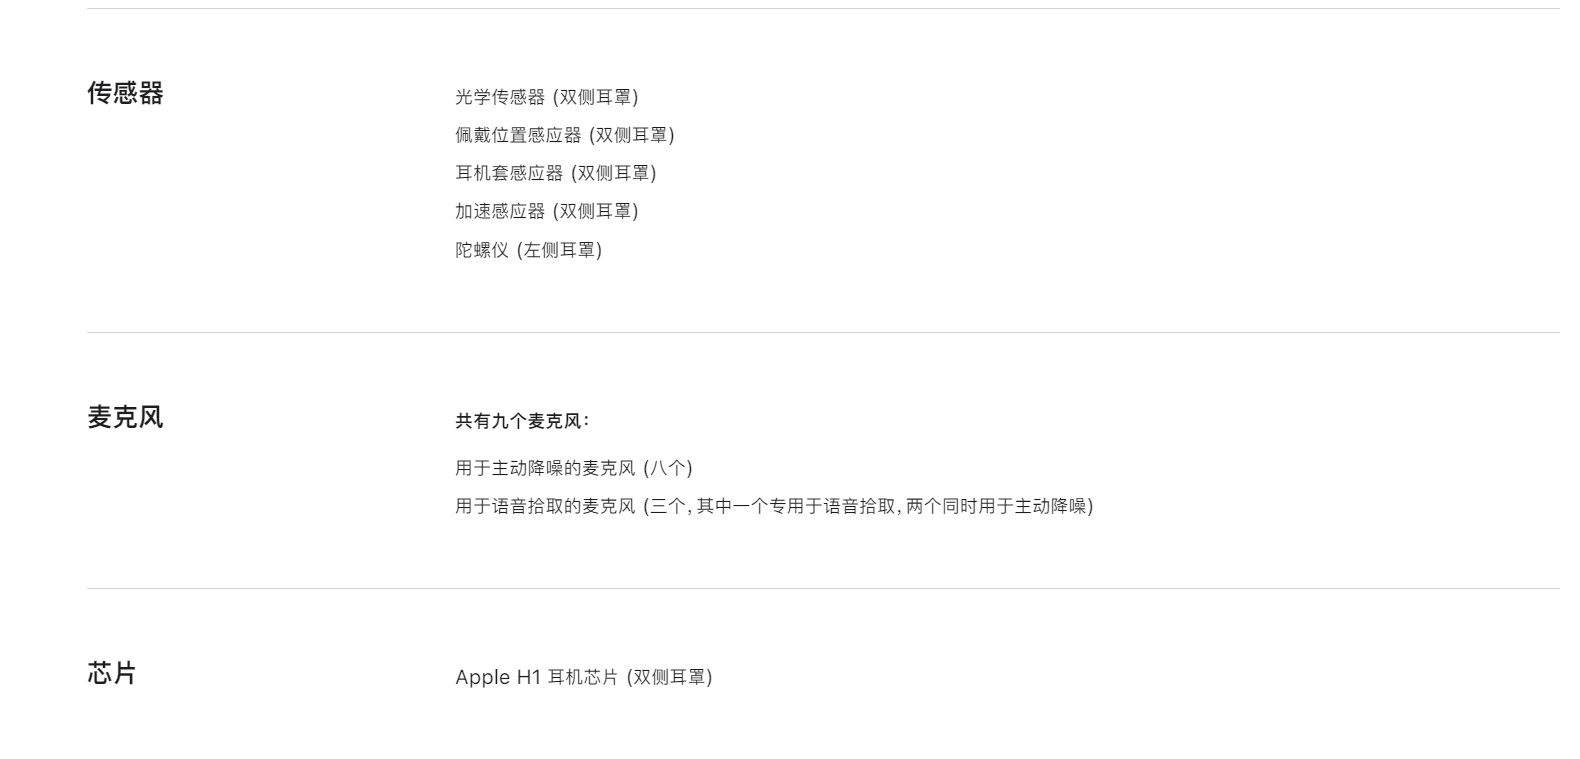 苹果最新款AirPods Max未搭载U1超宽带芯片